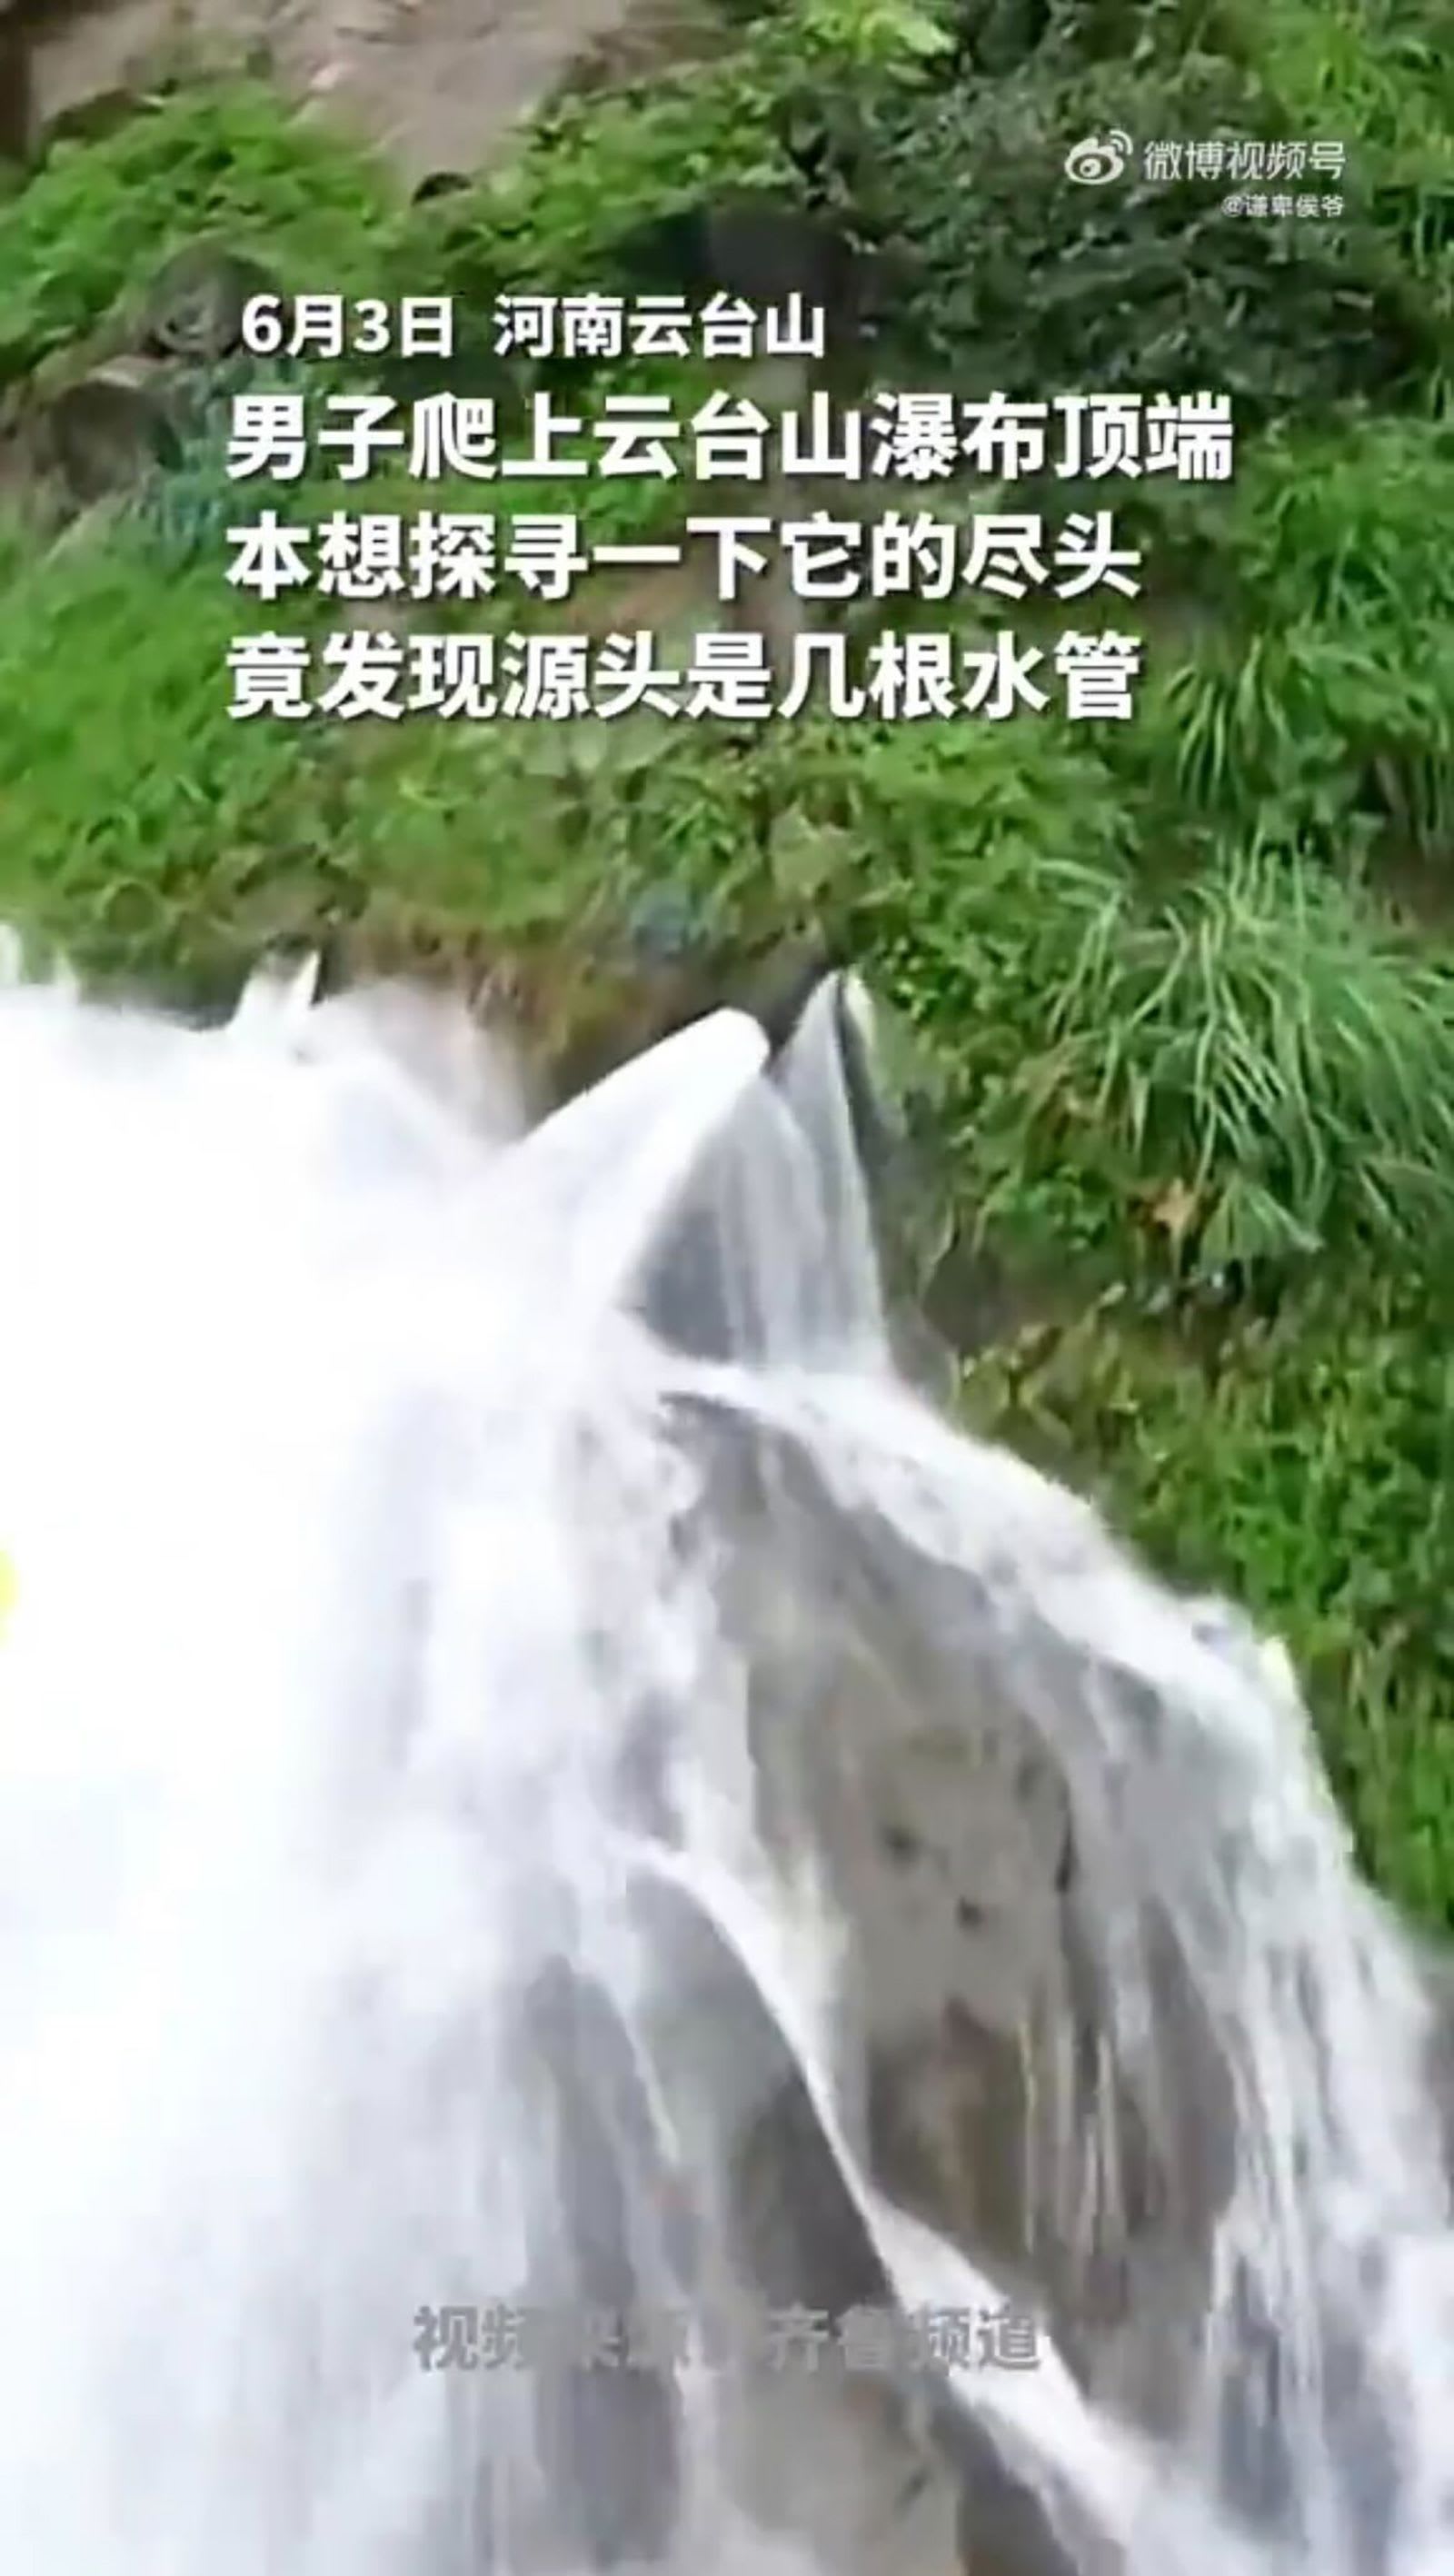 في الصين.. شلال يلفت الانتباه بعد تداول فيديو يُظهر أنبوبًا يمده بالماء